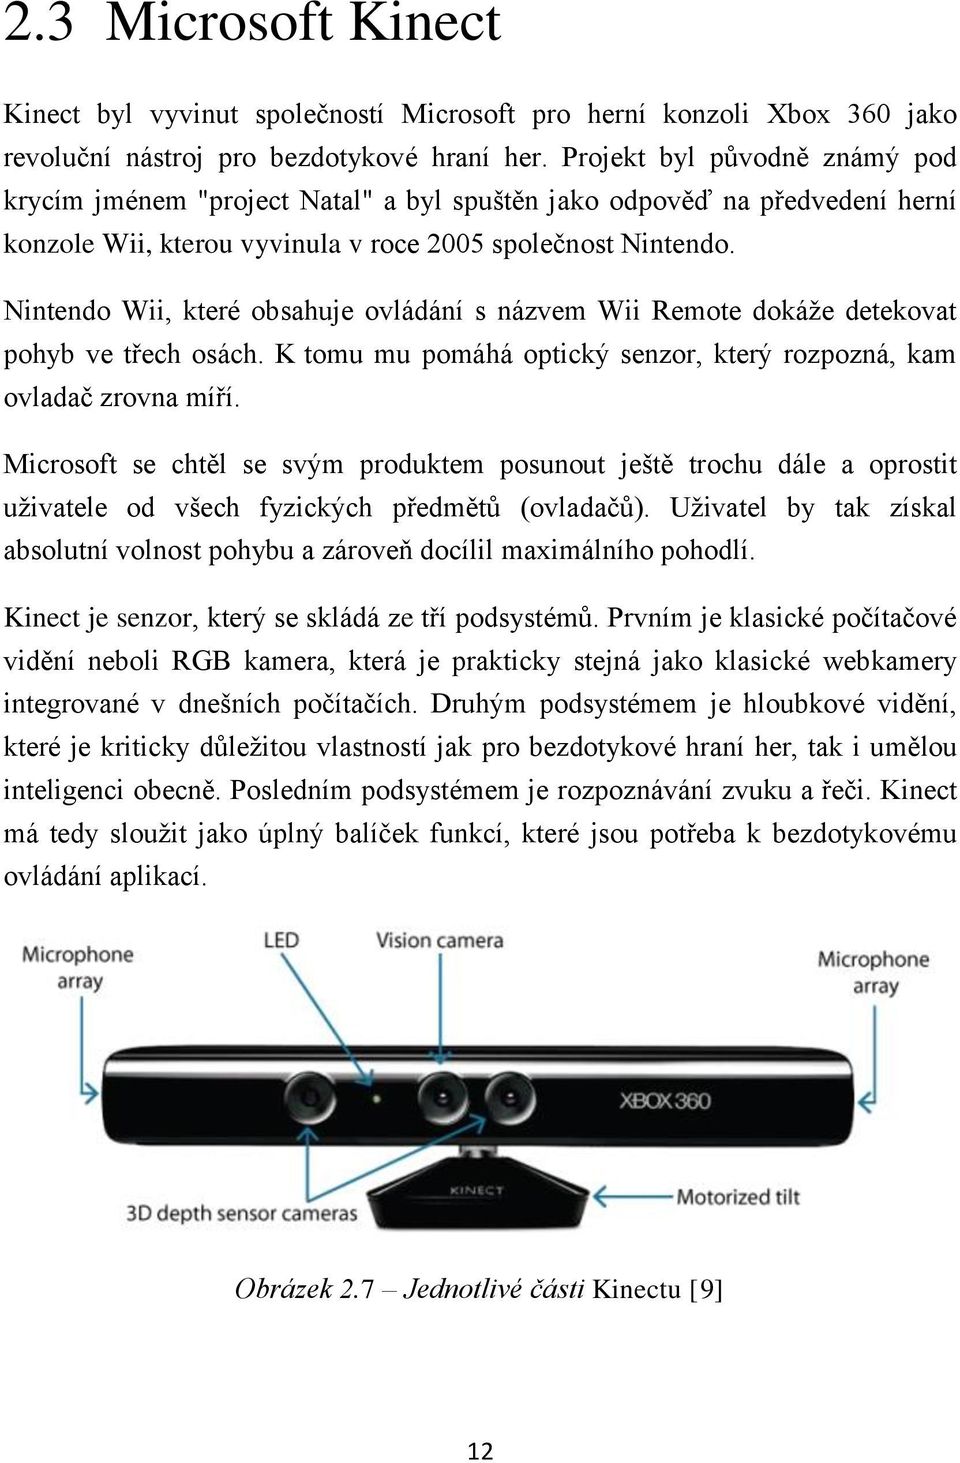 Nintendo Wii, které obsahuje ovládání s názvem Wii Remote dokáže detekovat pohyb ve třech osách. K tomu mu pomáhá optický senzor, který rozpozná, kam ovladač zrovna míří.